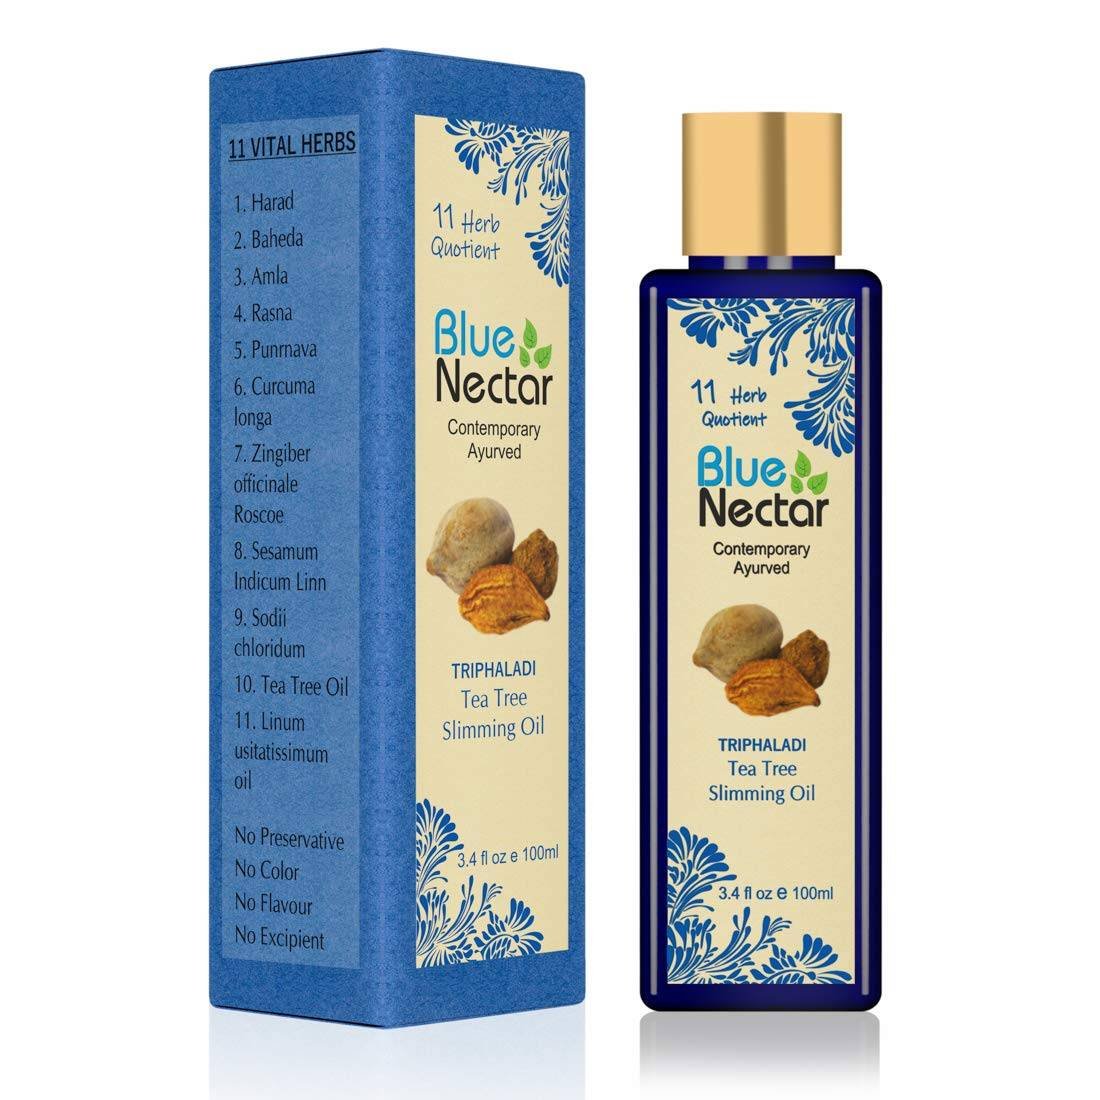 Blue Nectar Ayurvedic Anti Cellulite & Ayurvedic Slimming Oil 200Ml